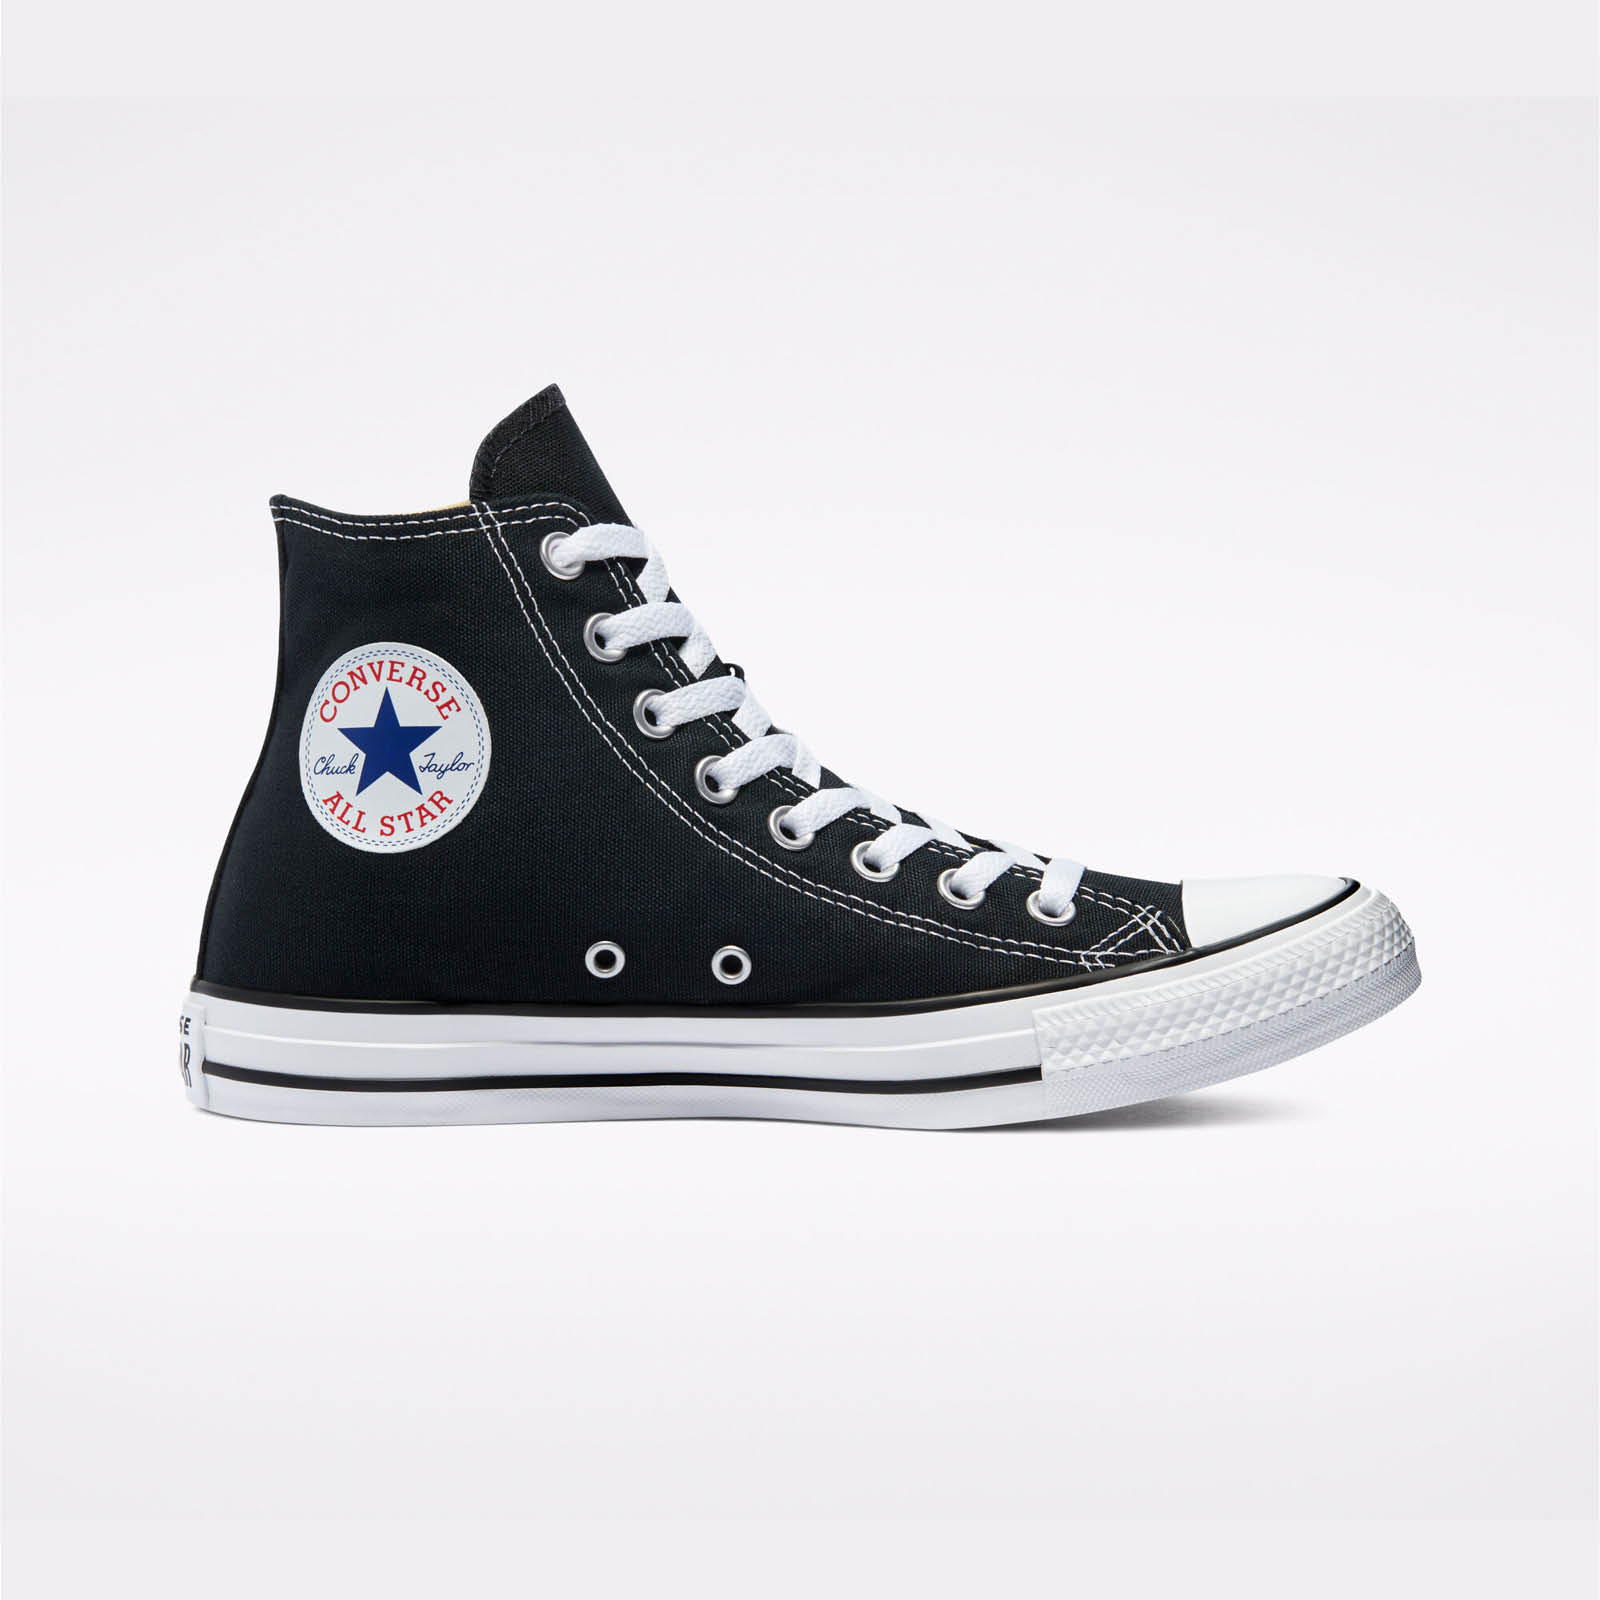 Ανδρικά > Παπούτσια > Sneaker > Παπούτσι Mid Cut Converse - CHUCK TAYLOR ALL STAR - 001-BLACK